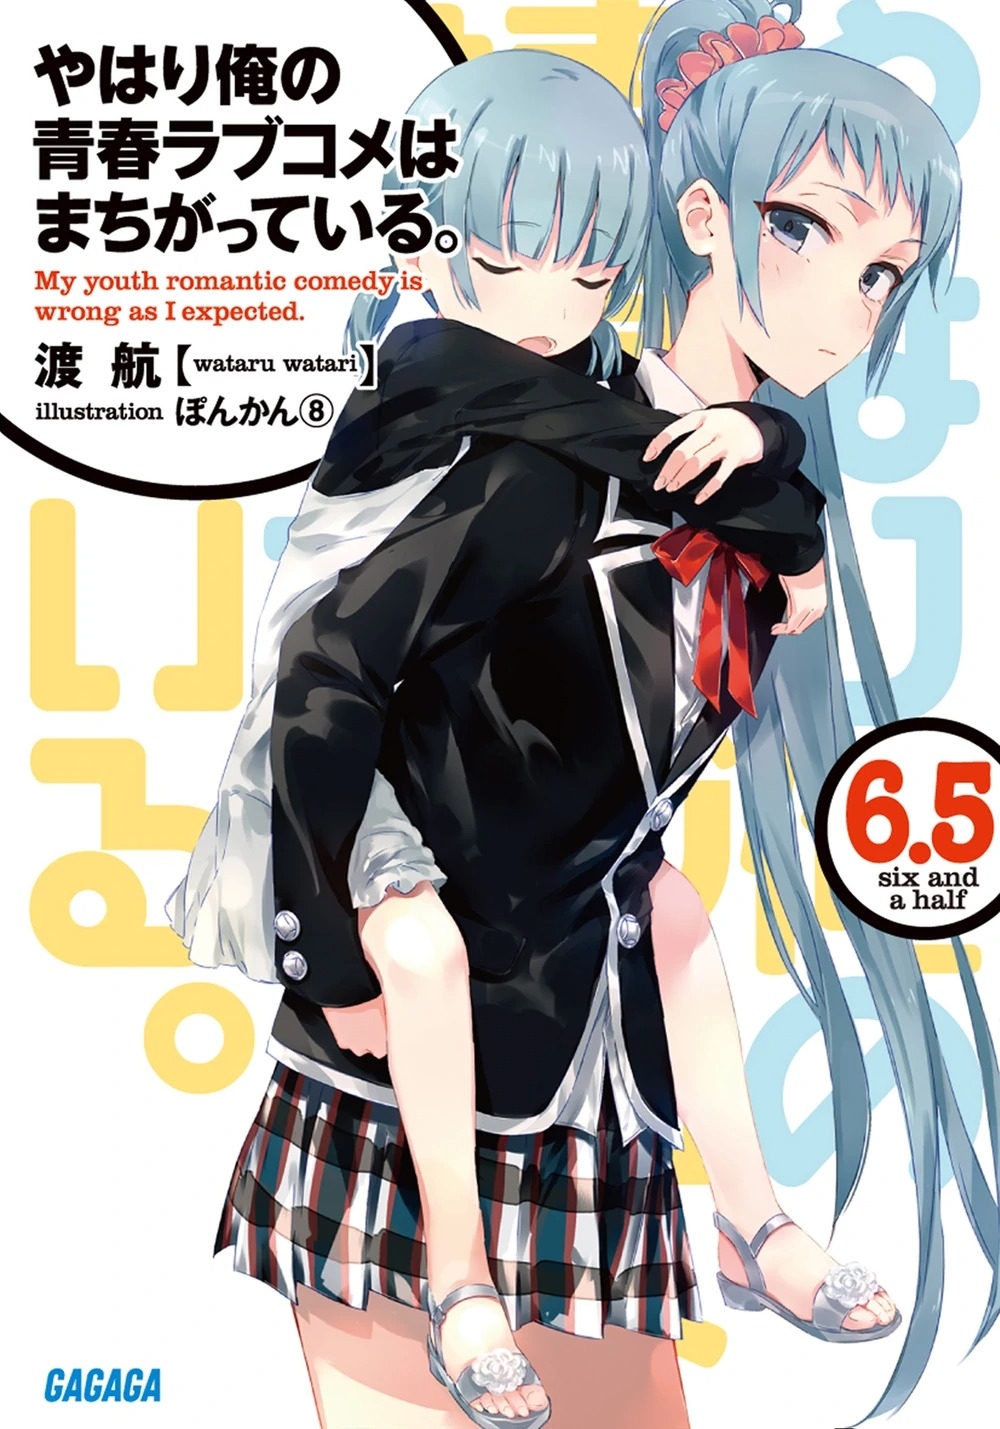 [light novel] yahari ore no seishun love come wa machigatteiru illust compliation 72